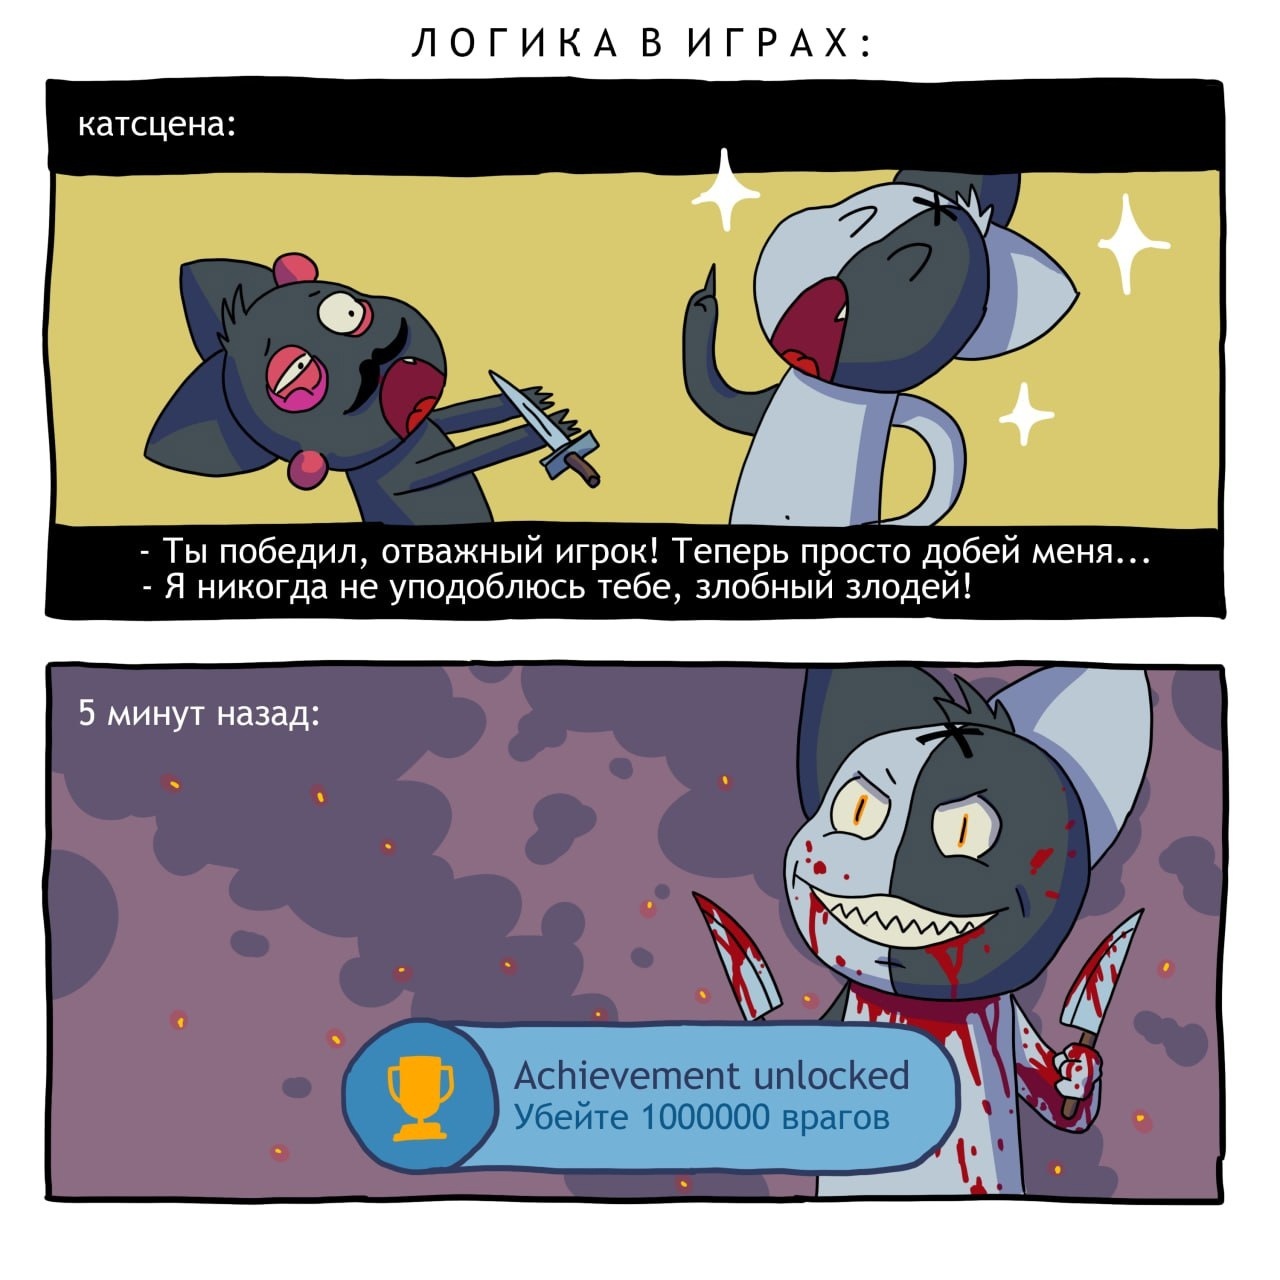 Коты-психопаты, анимешницы и БДСМ имени Сталина: какими были первые веб-комиксы на русском языке? Часть 2 - 18